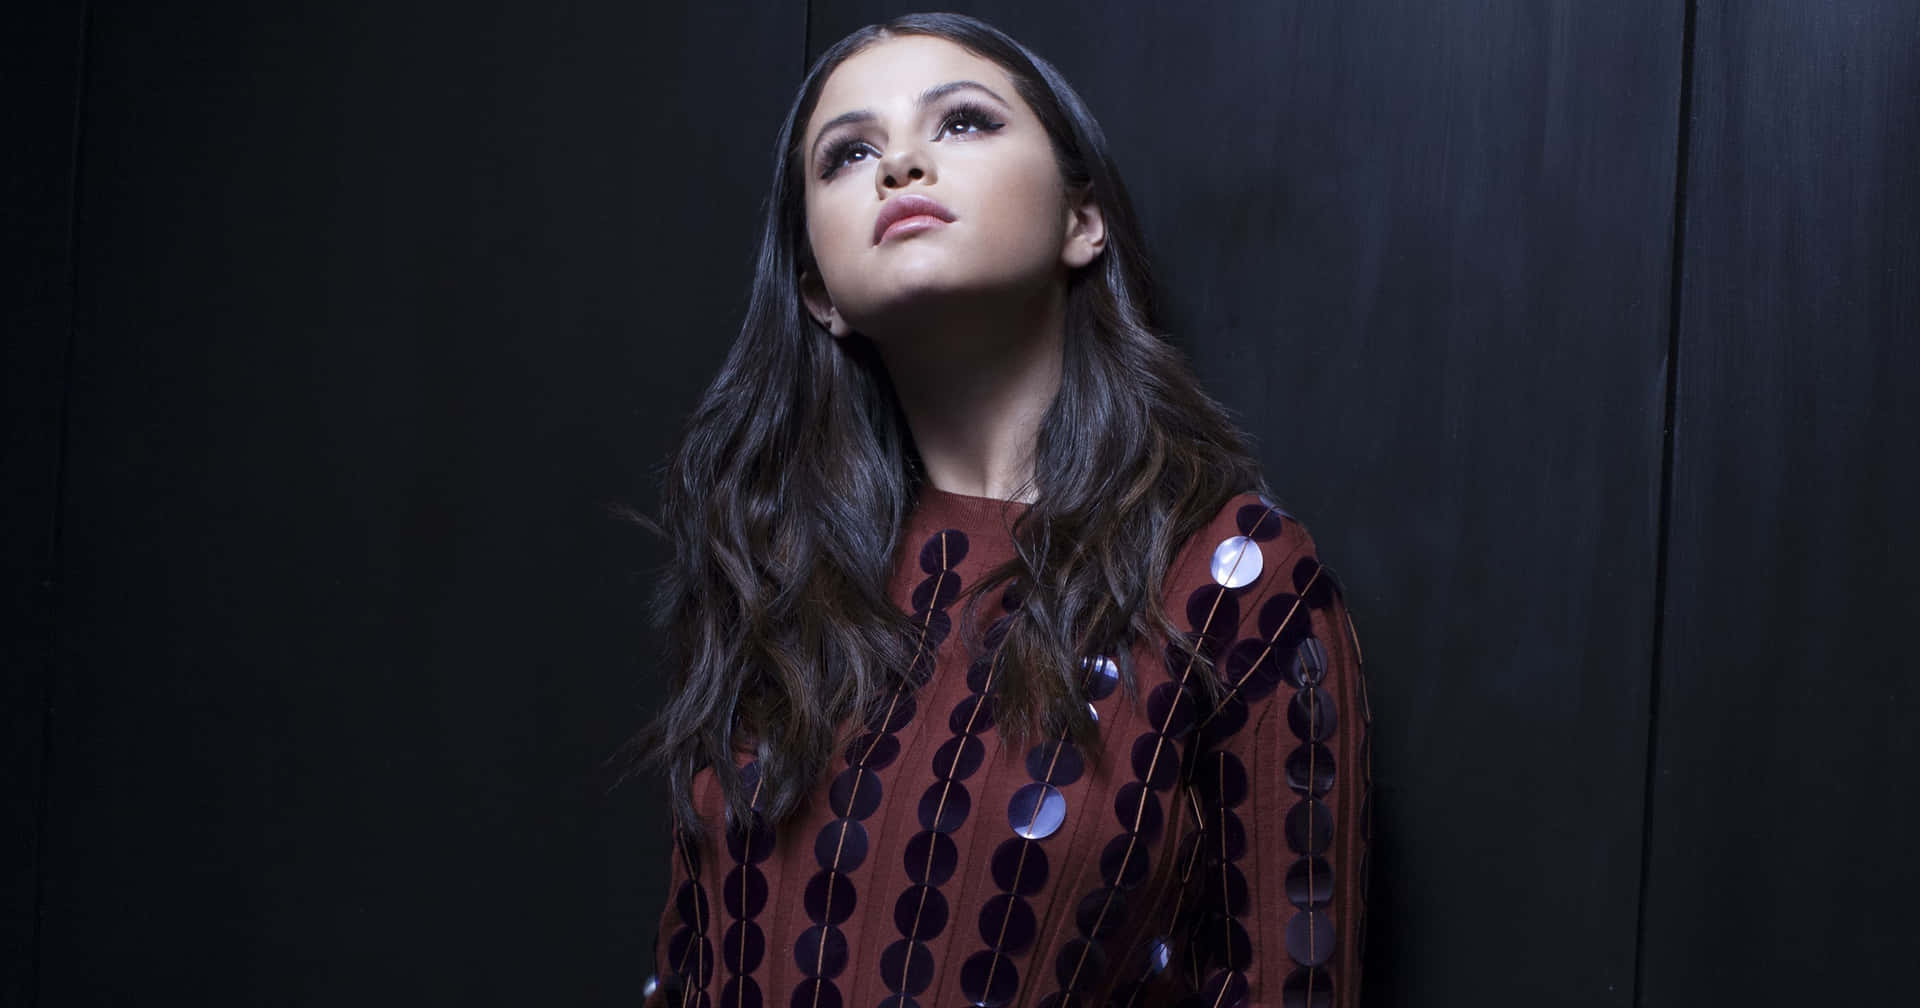 Cantantey Compositora Selena Gomez Disfrutando De La Luz De Atención.